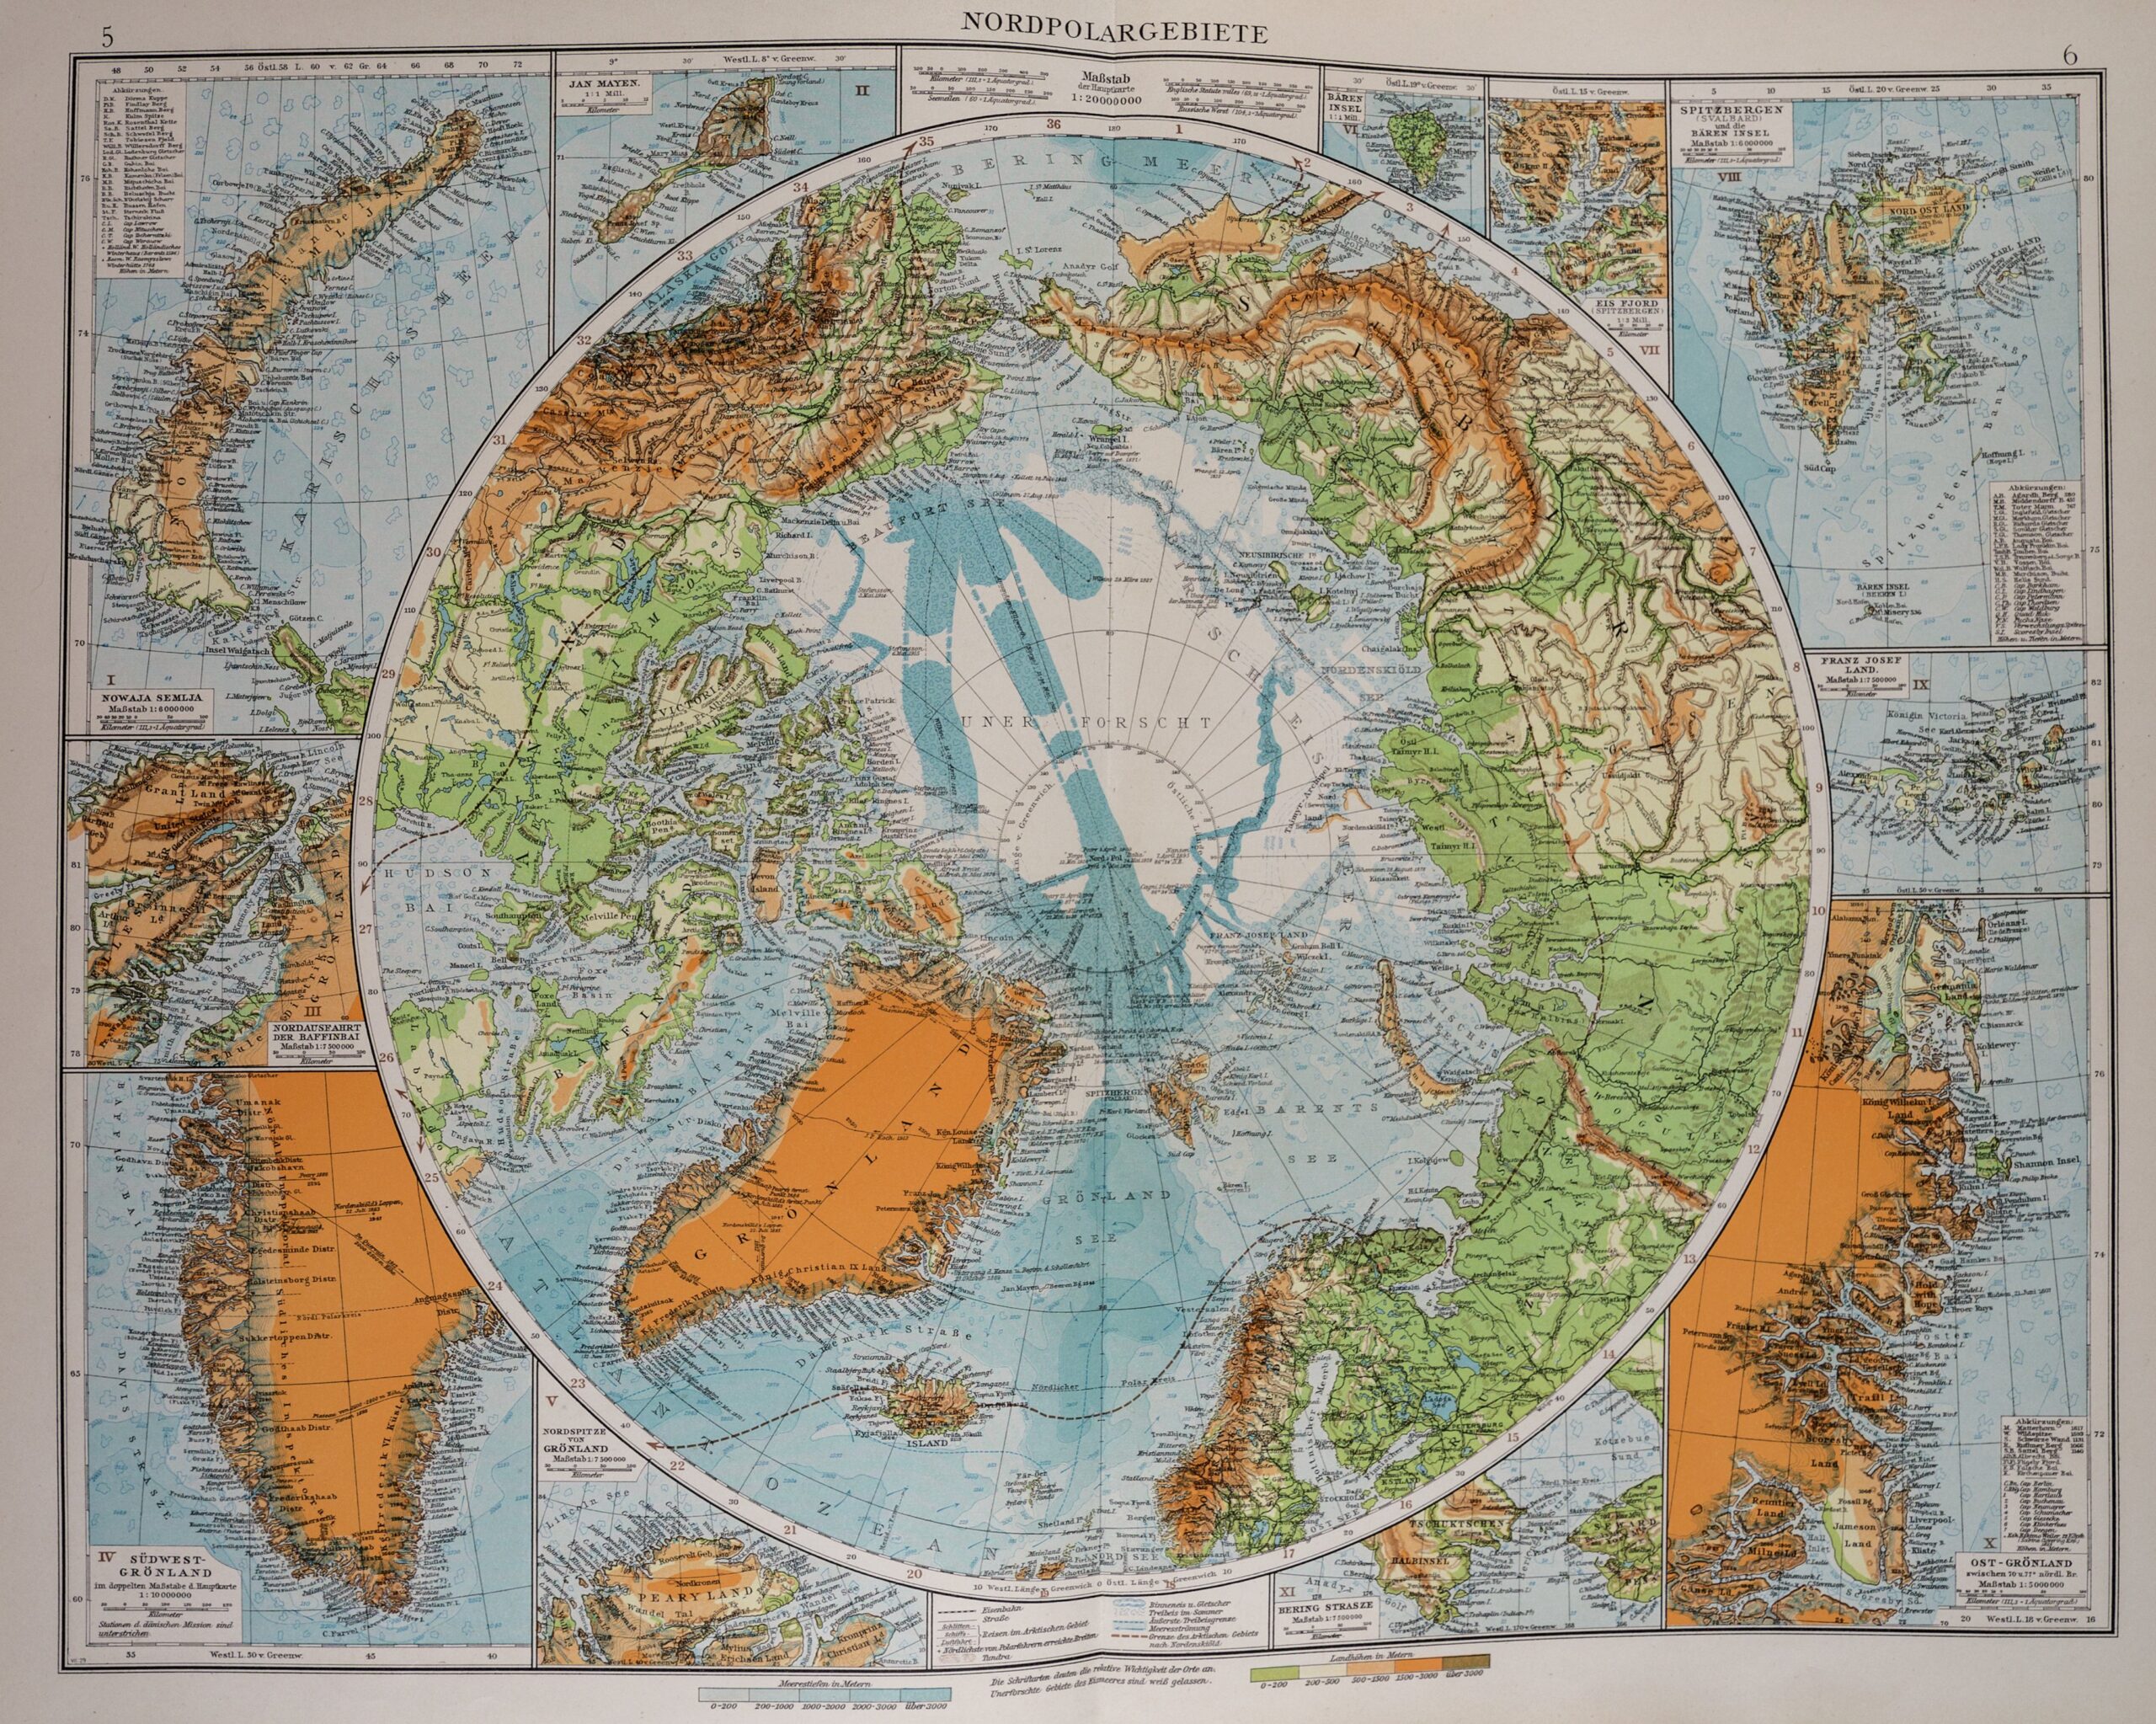 Mapa w kolorze niebieskim, zielonym i pomarańczowym, wyśrodkowana na rzucie globu zorientowanego wokół bieguna północnego